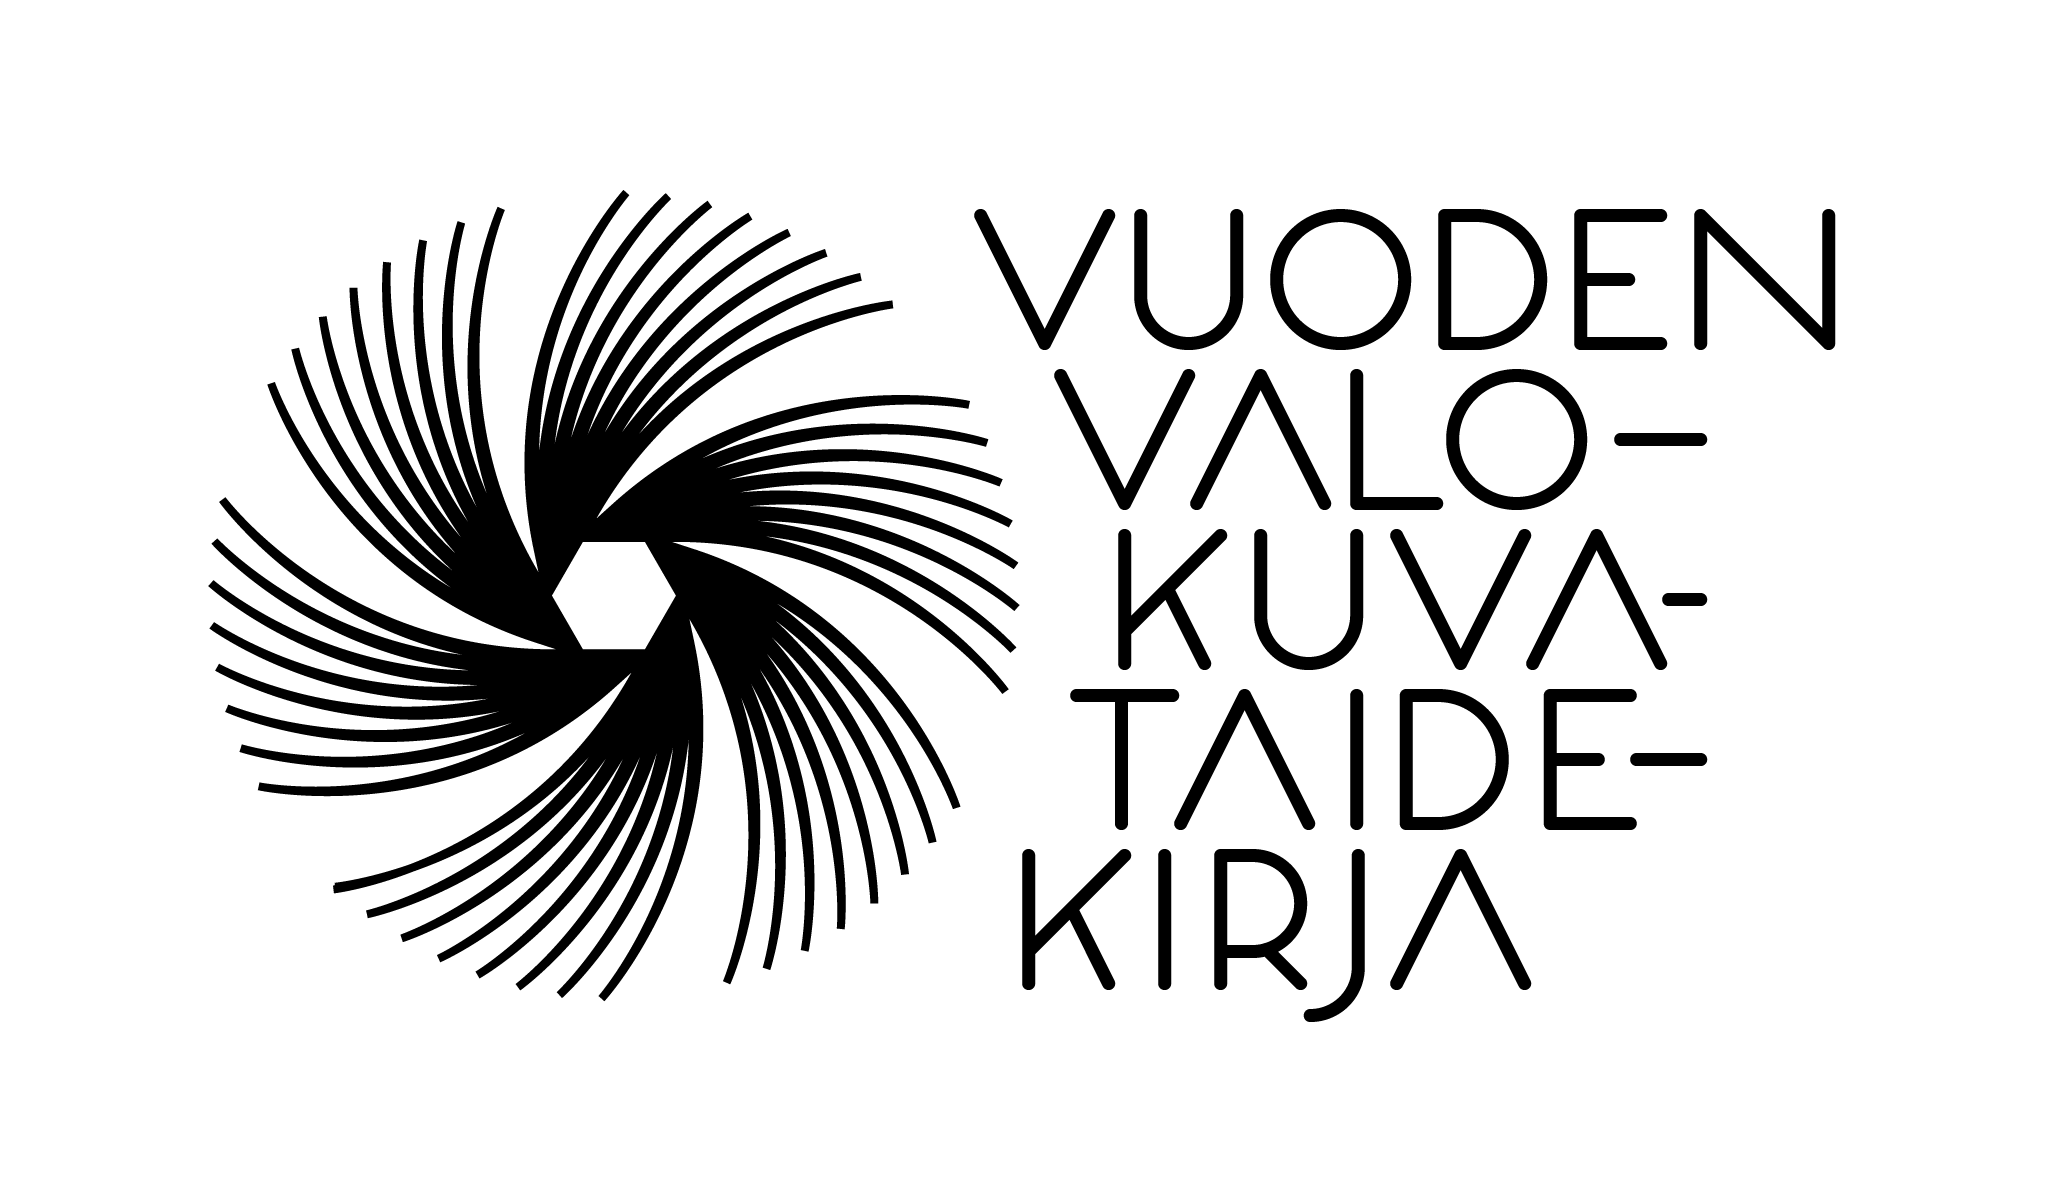 valokuvataidekirjapalkinto-logo-rgb-musta.png